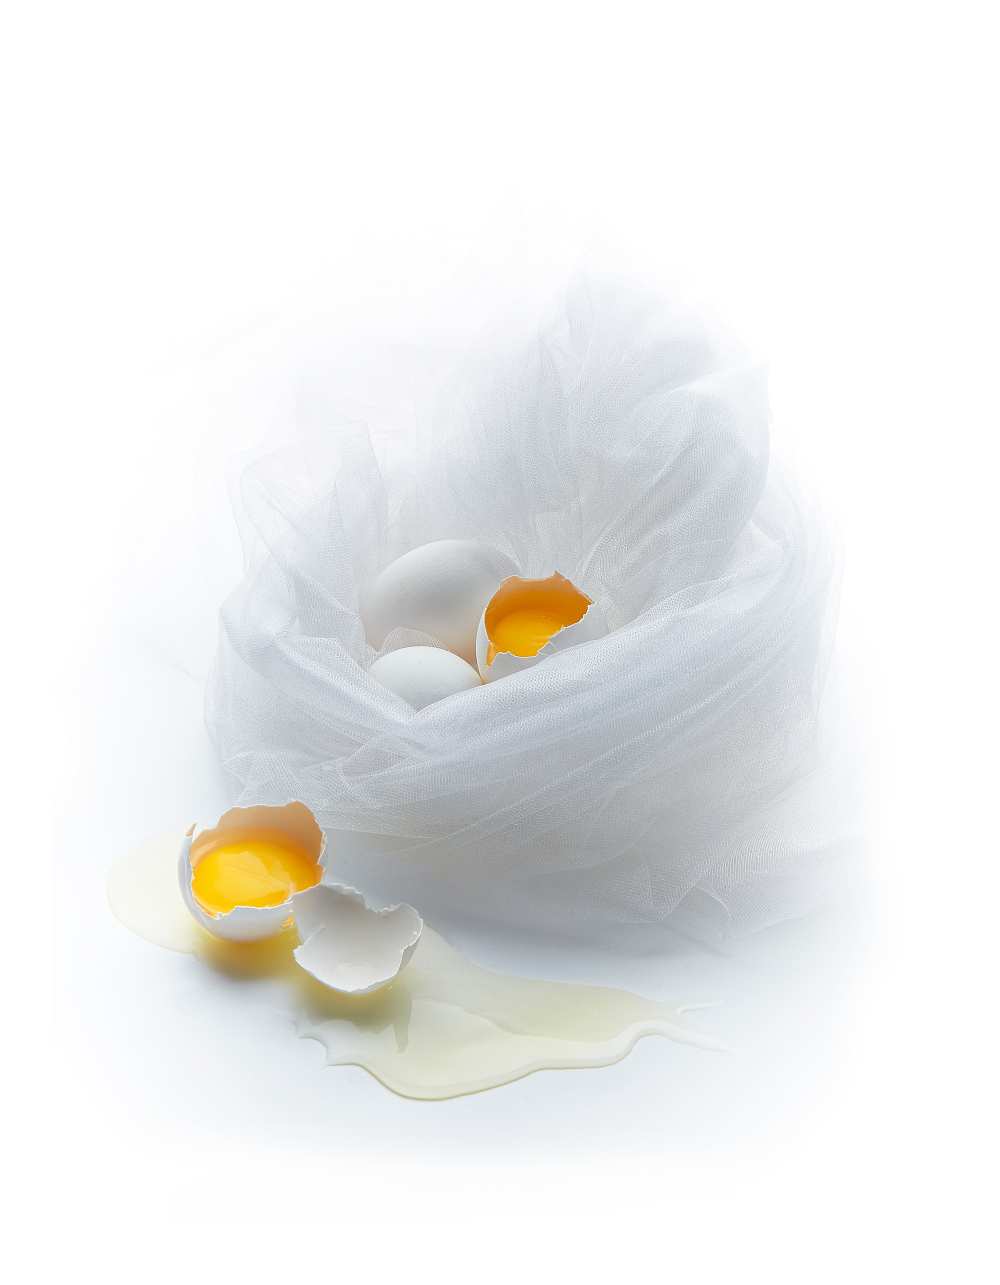 Eggs from Dmitriy Batenko